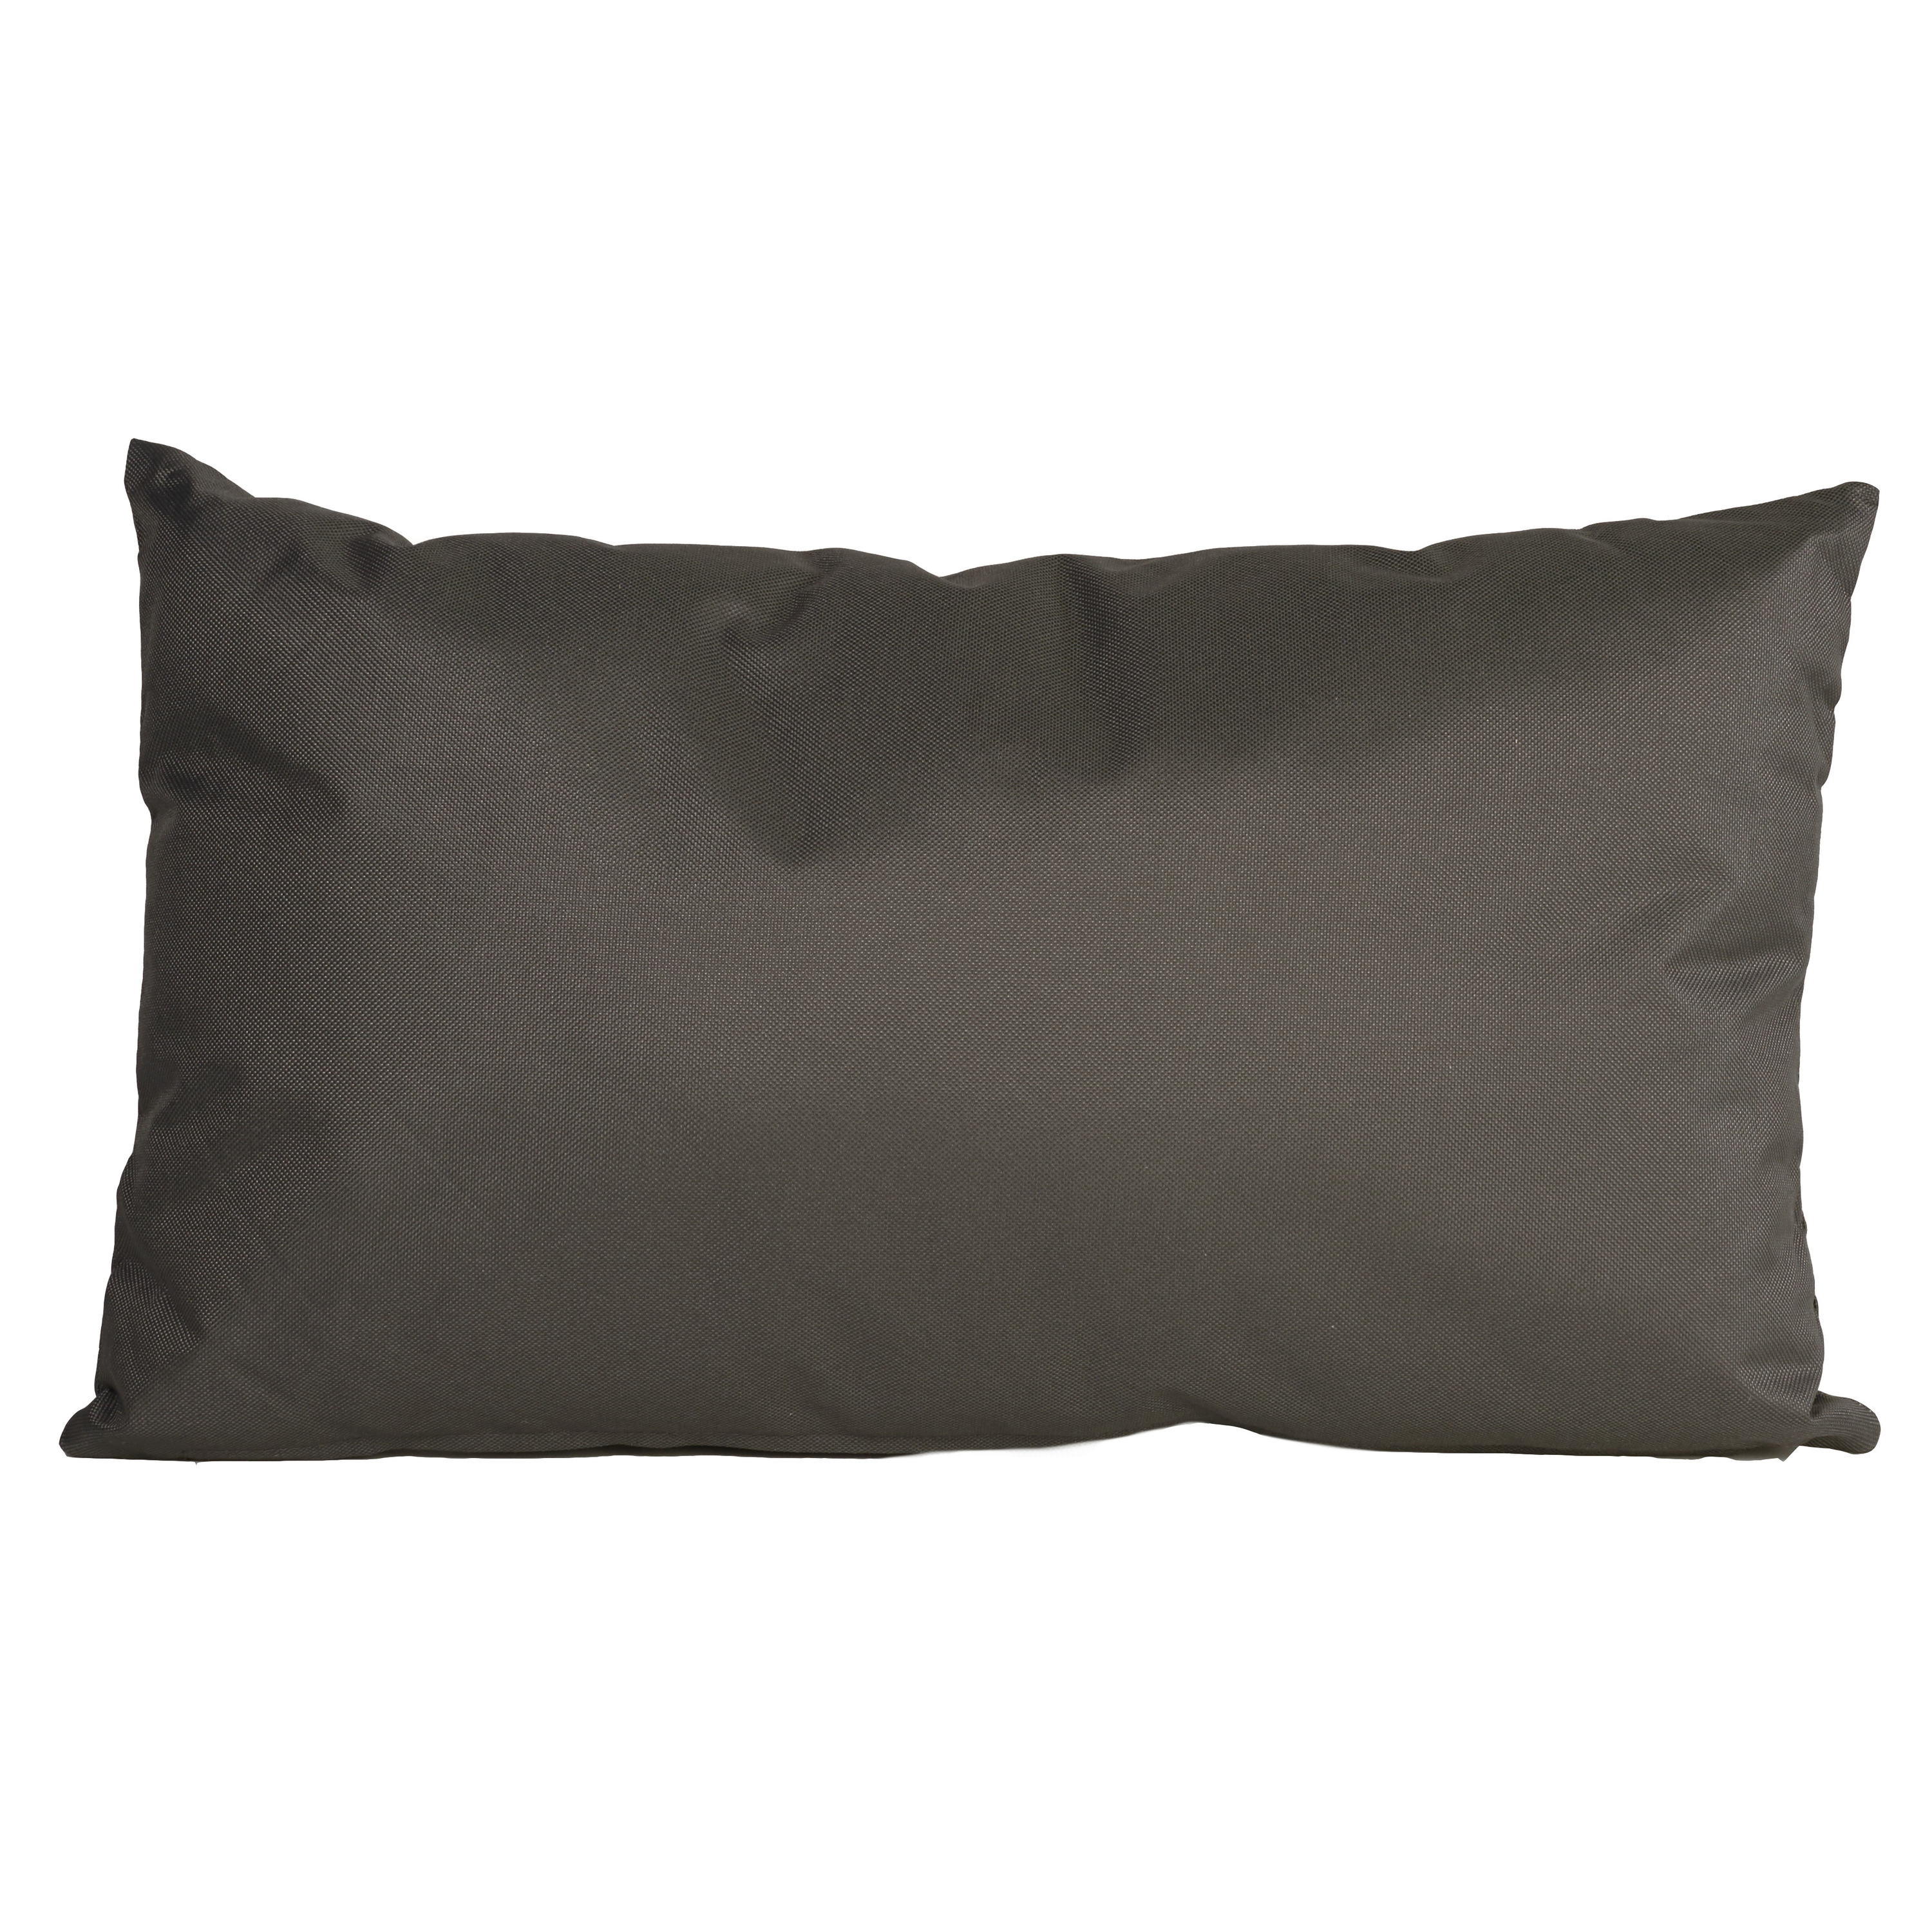 Bank-sier kussens voor binnen en buiten in de kleur antraciet grijs 30 x 50 cm